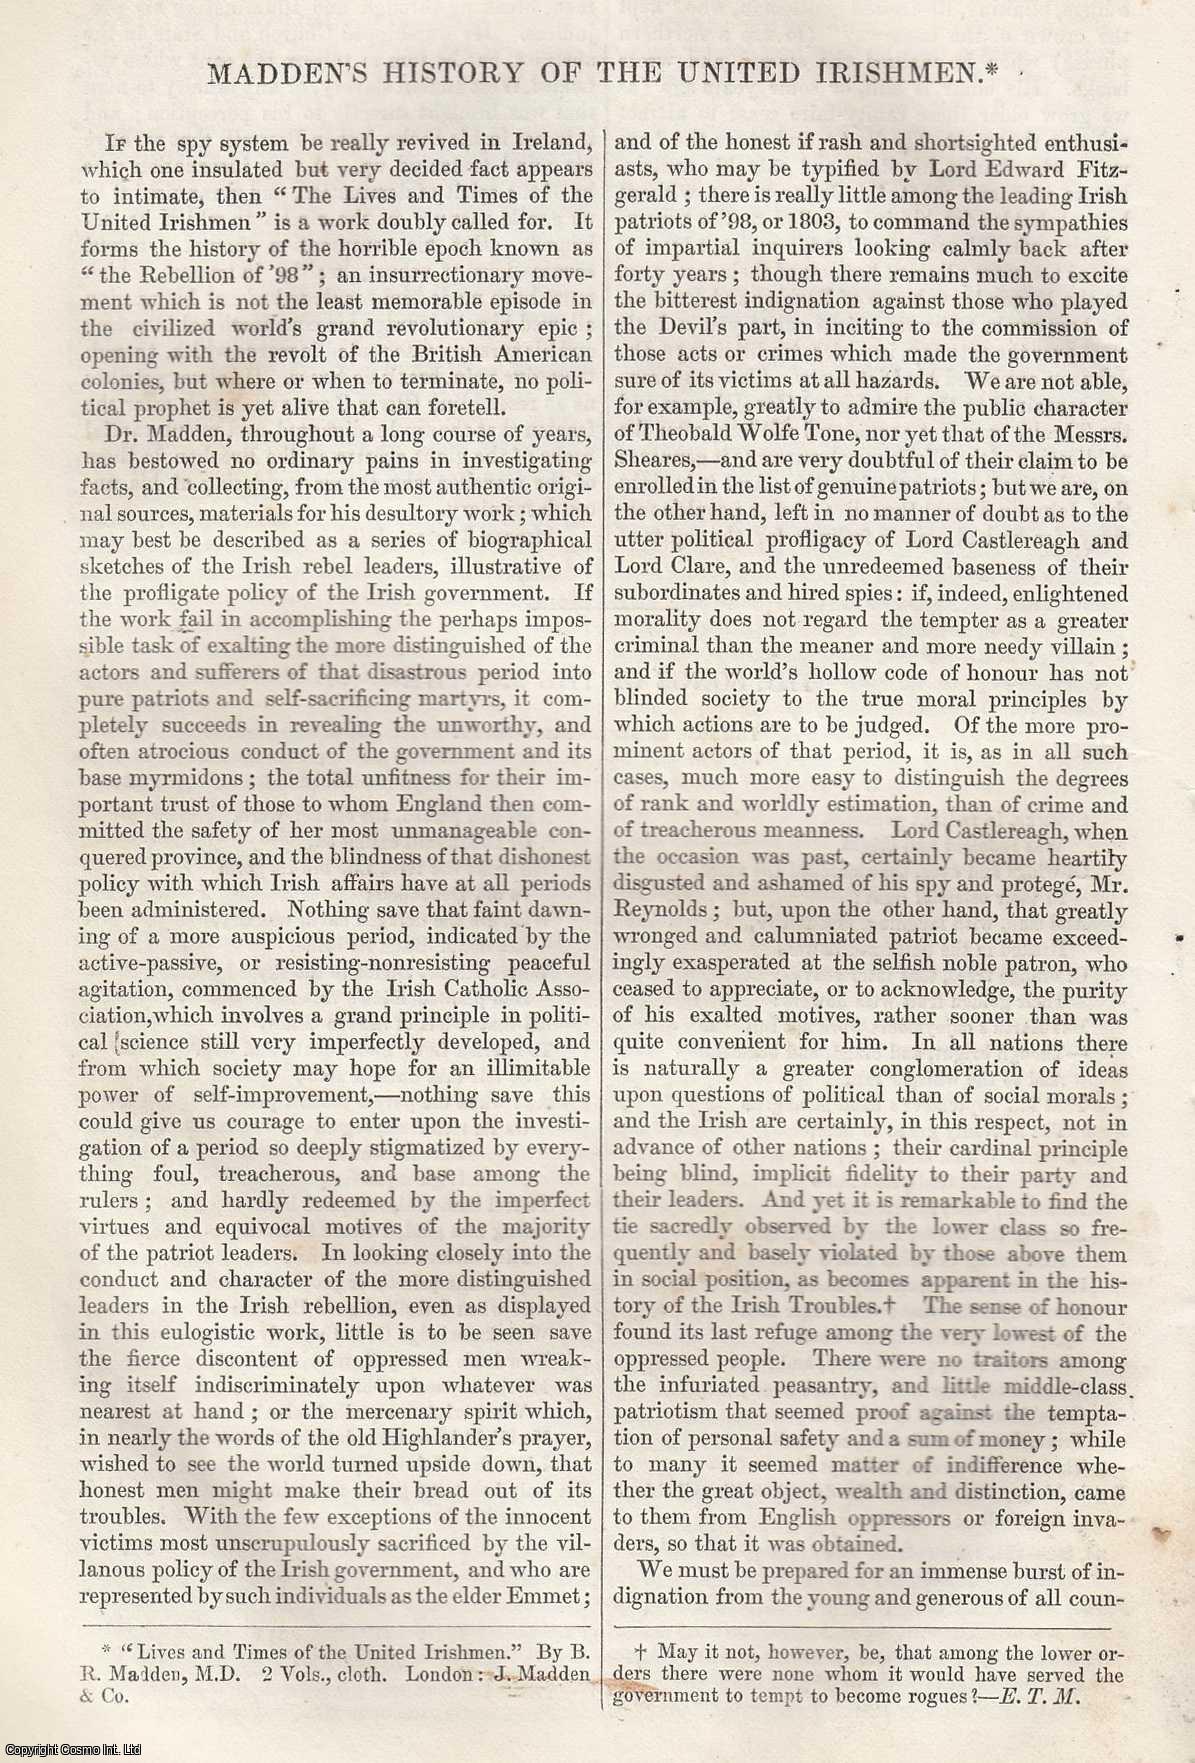 --- - Madden's History of The United Irishmen. An original article from Tait's Edinburgh Magazine, 1842.